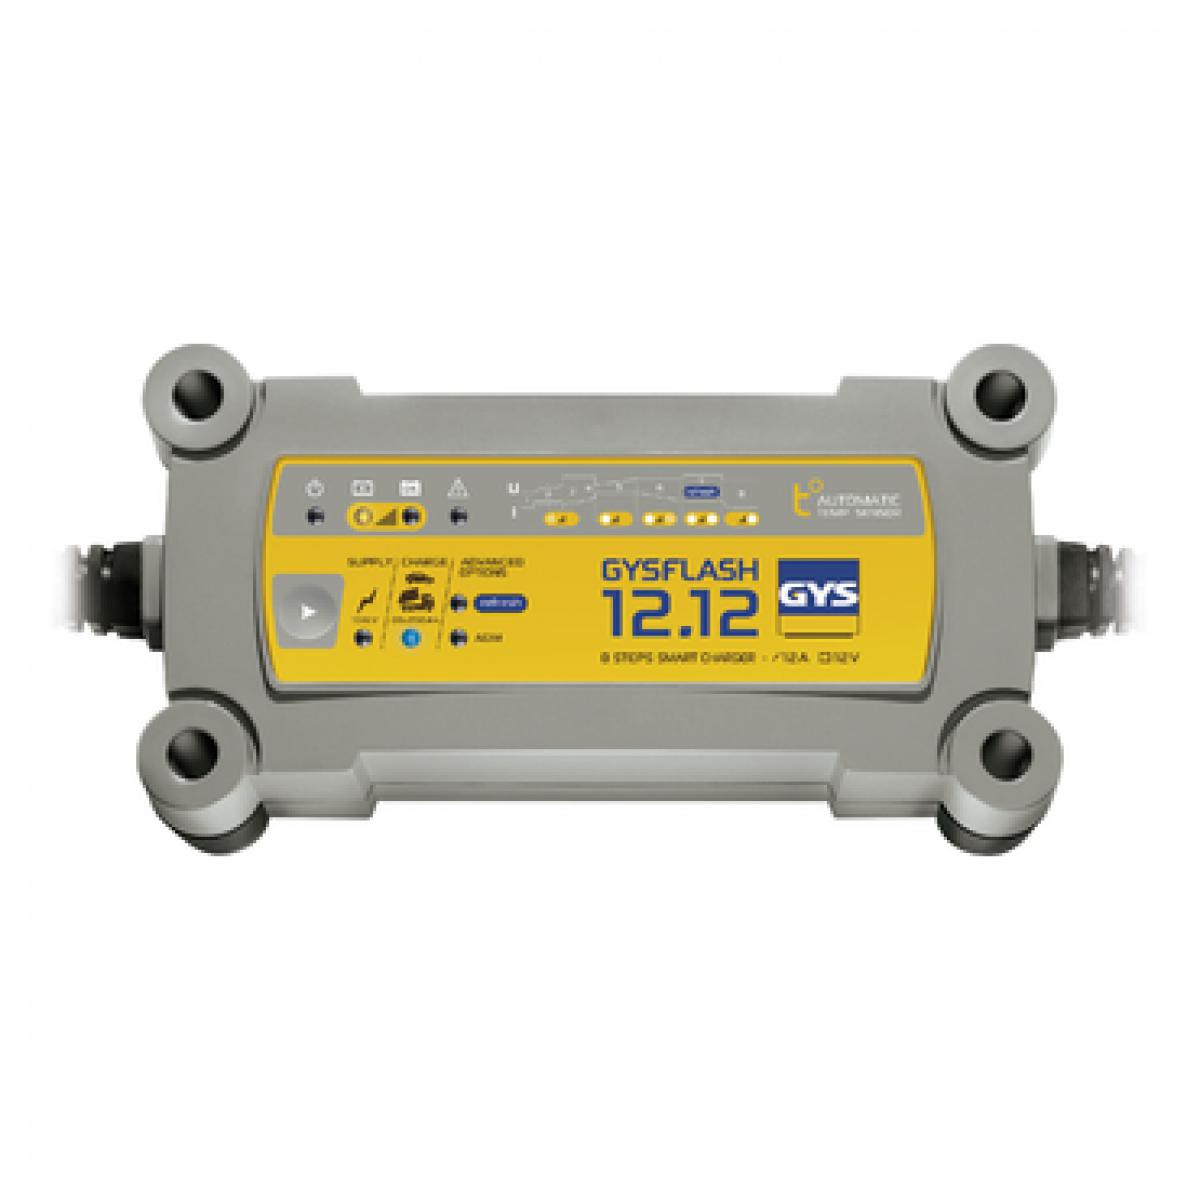 Gys - Gys - Chargeur de batterie 12 V 12 A de 20 à 250 Ah - GYSFLASH 12.12 - Nettoyeurs haute pression